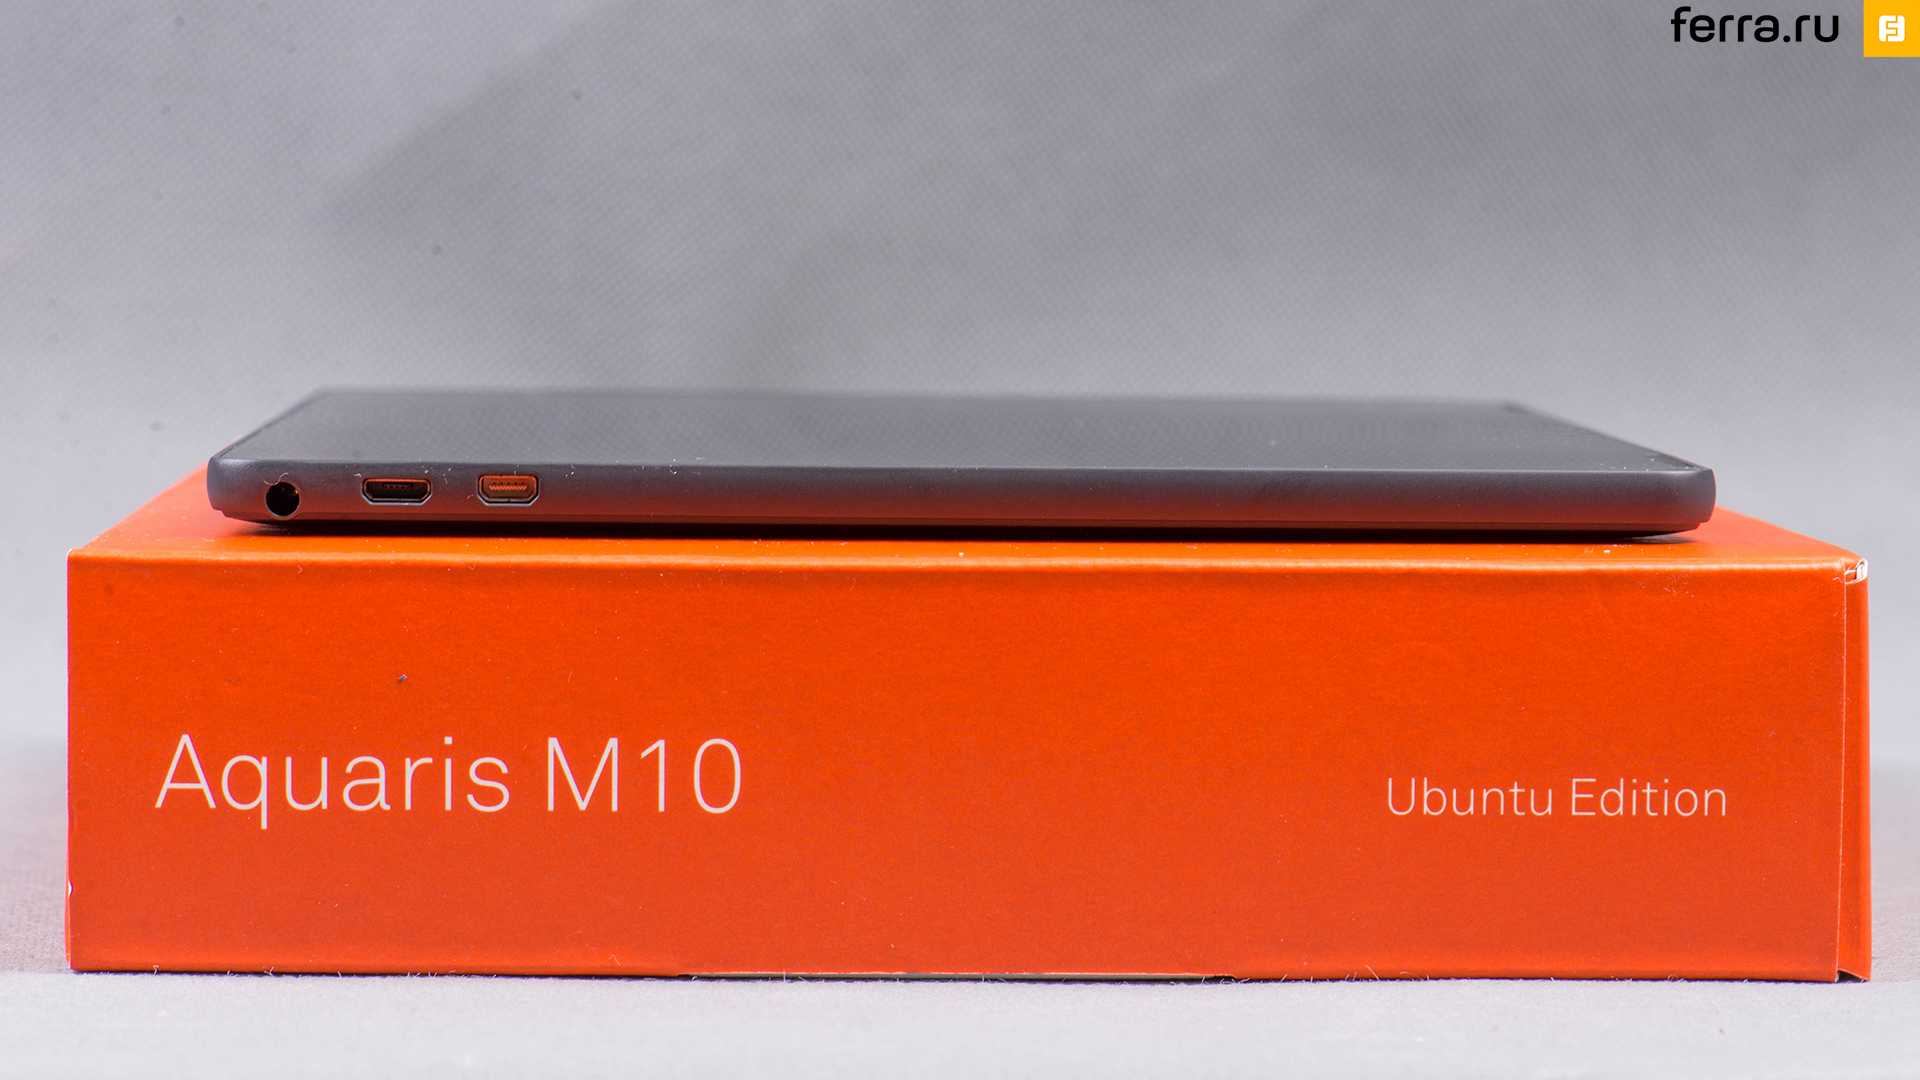 Bq aquaris m10 ubuntu edition hd - купить , скидки, цена, отзывы, обзор, характеристики - планшеты